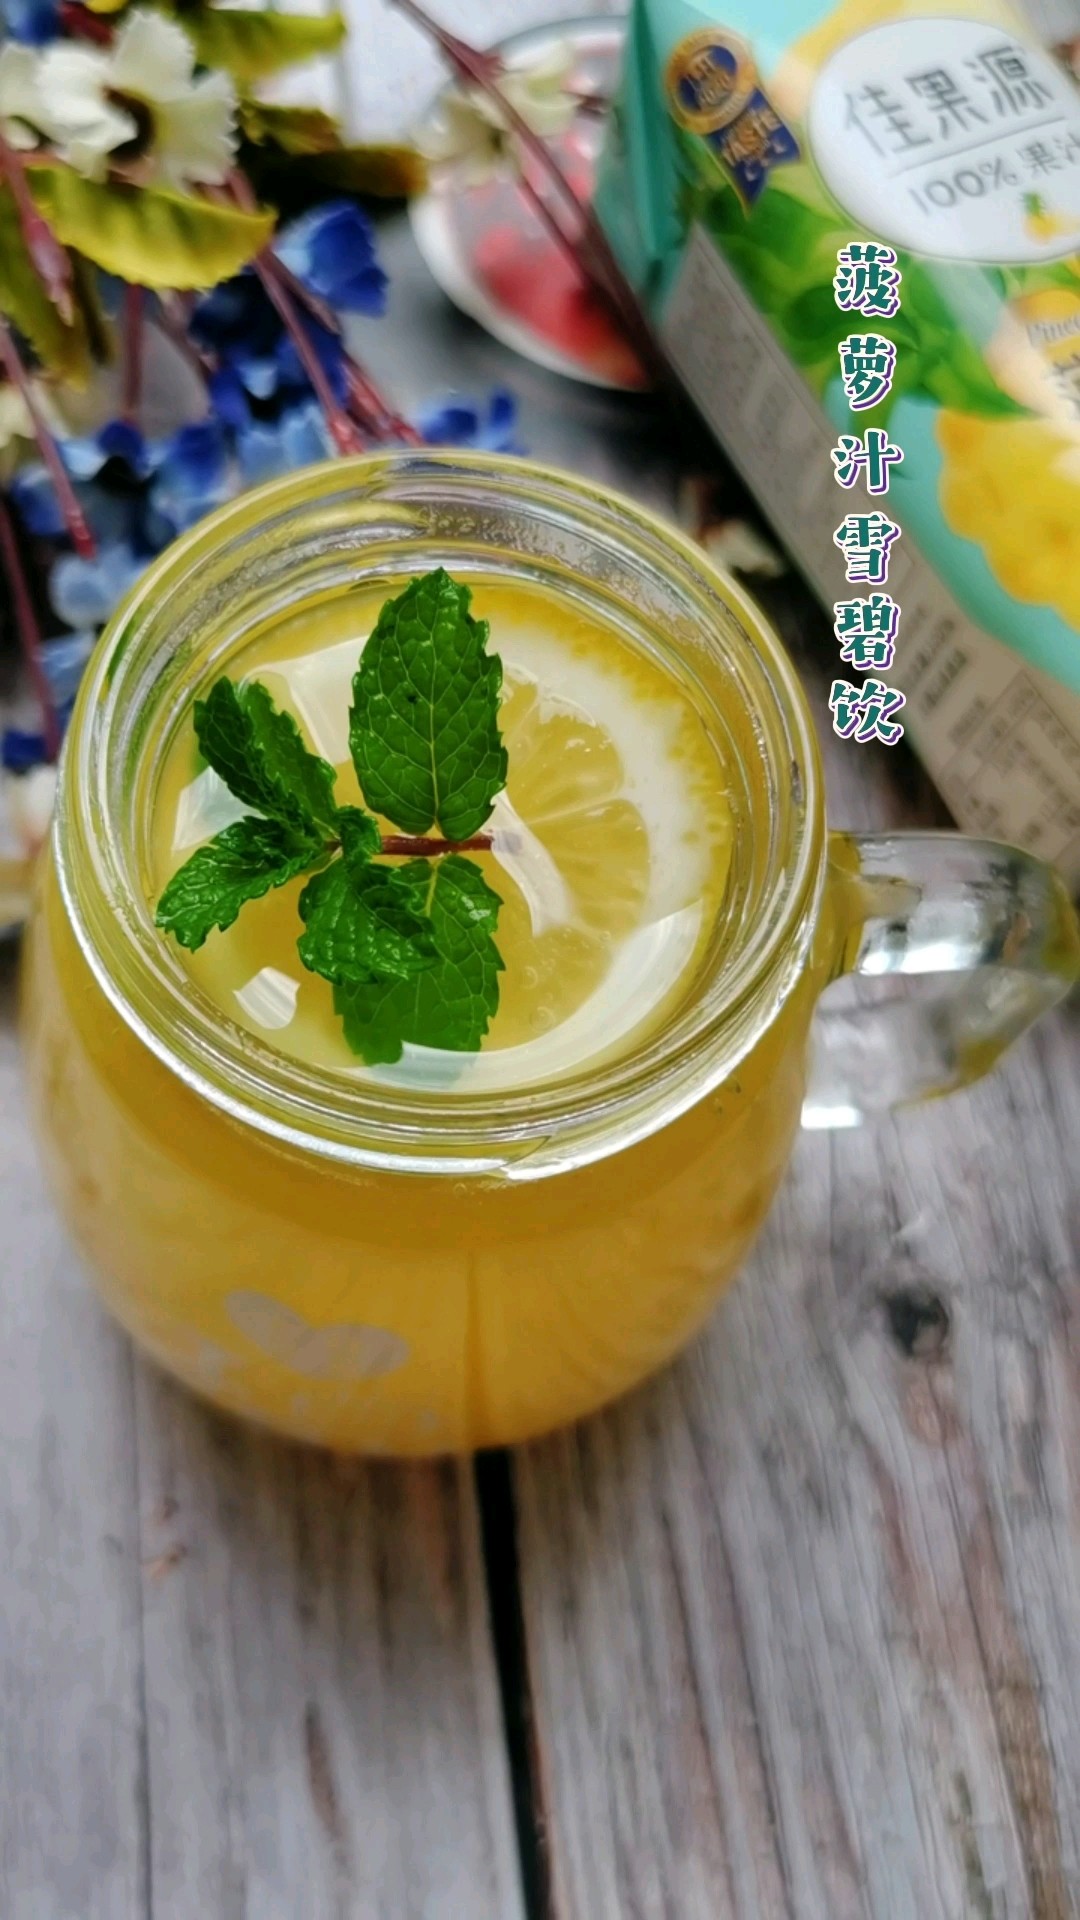 Pineapple Juice Sprite Drink recipe